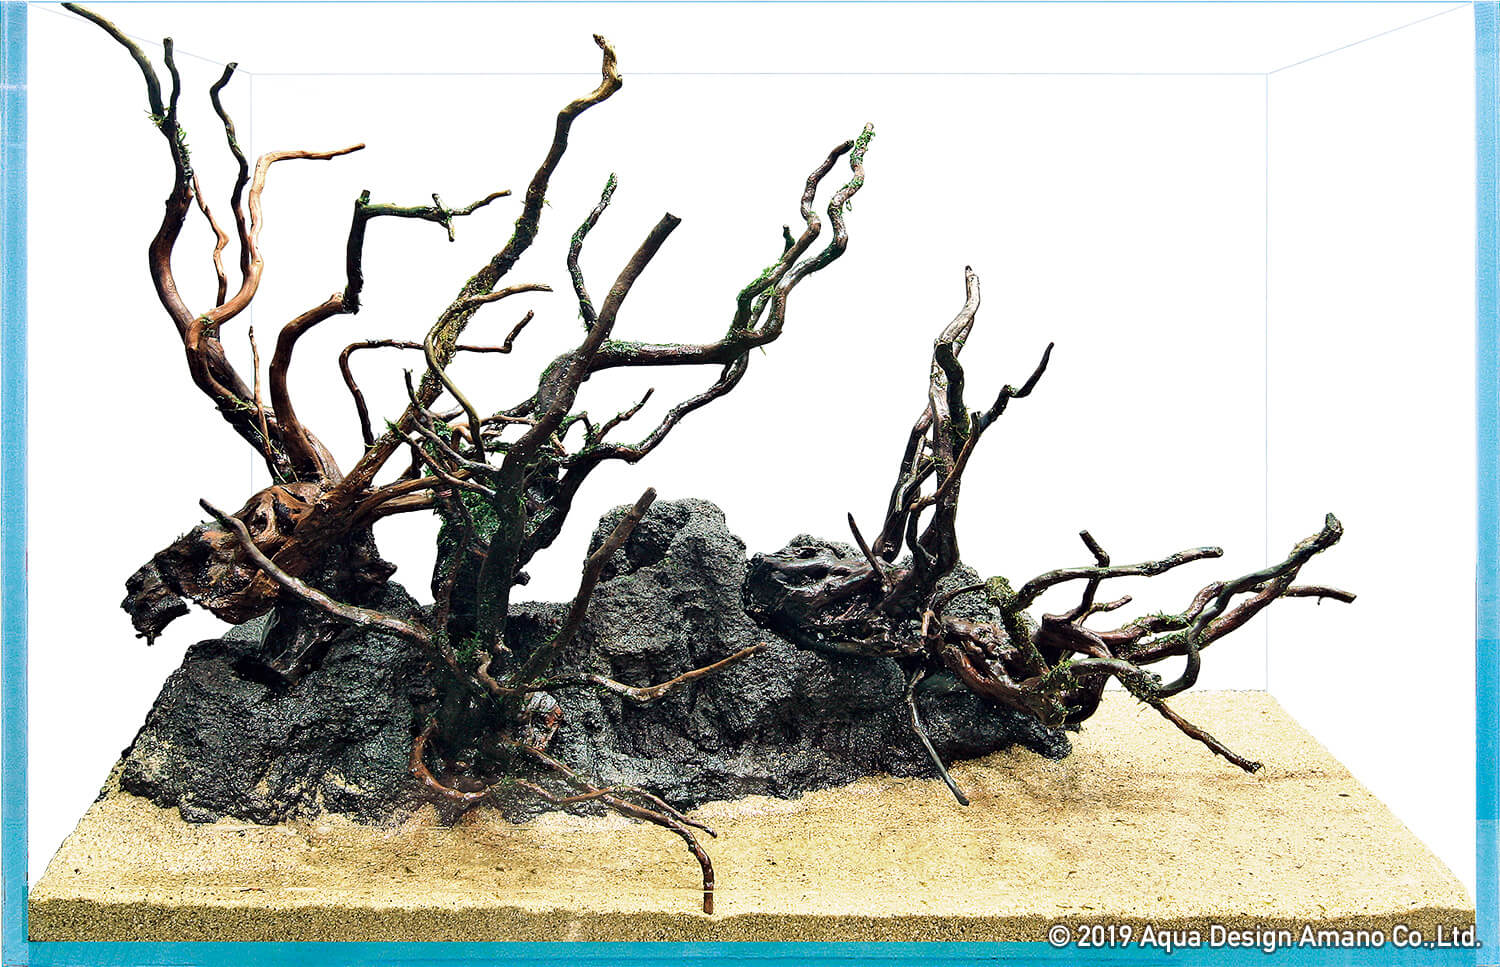 素材で決まる水景の印象-流木の組み方- | NEWS | DOOA